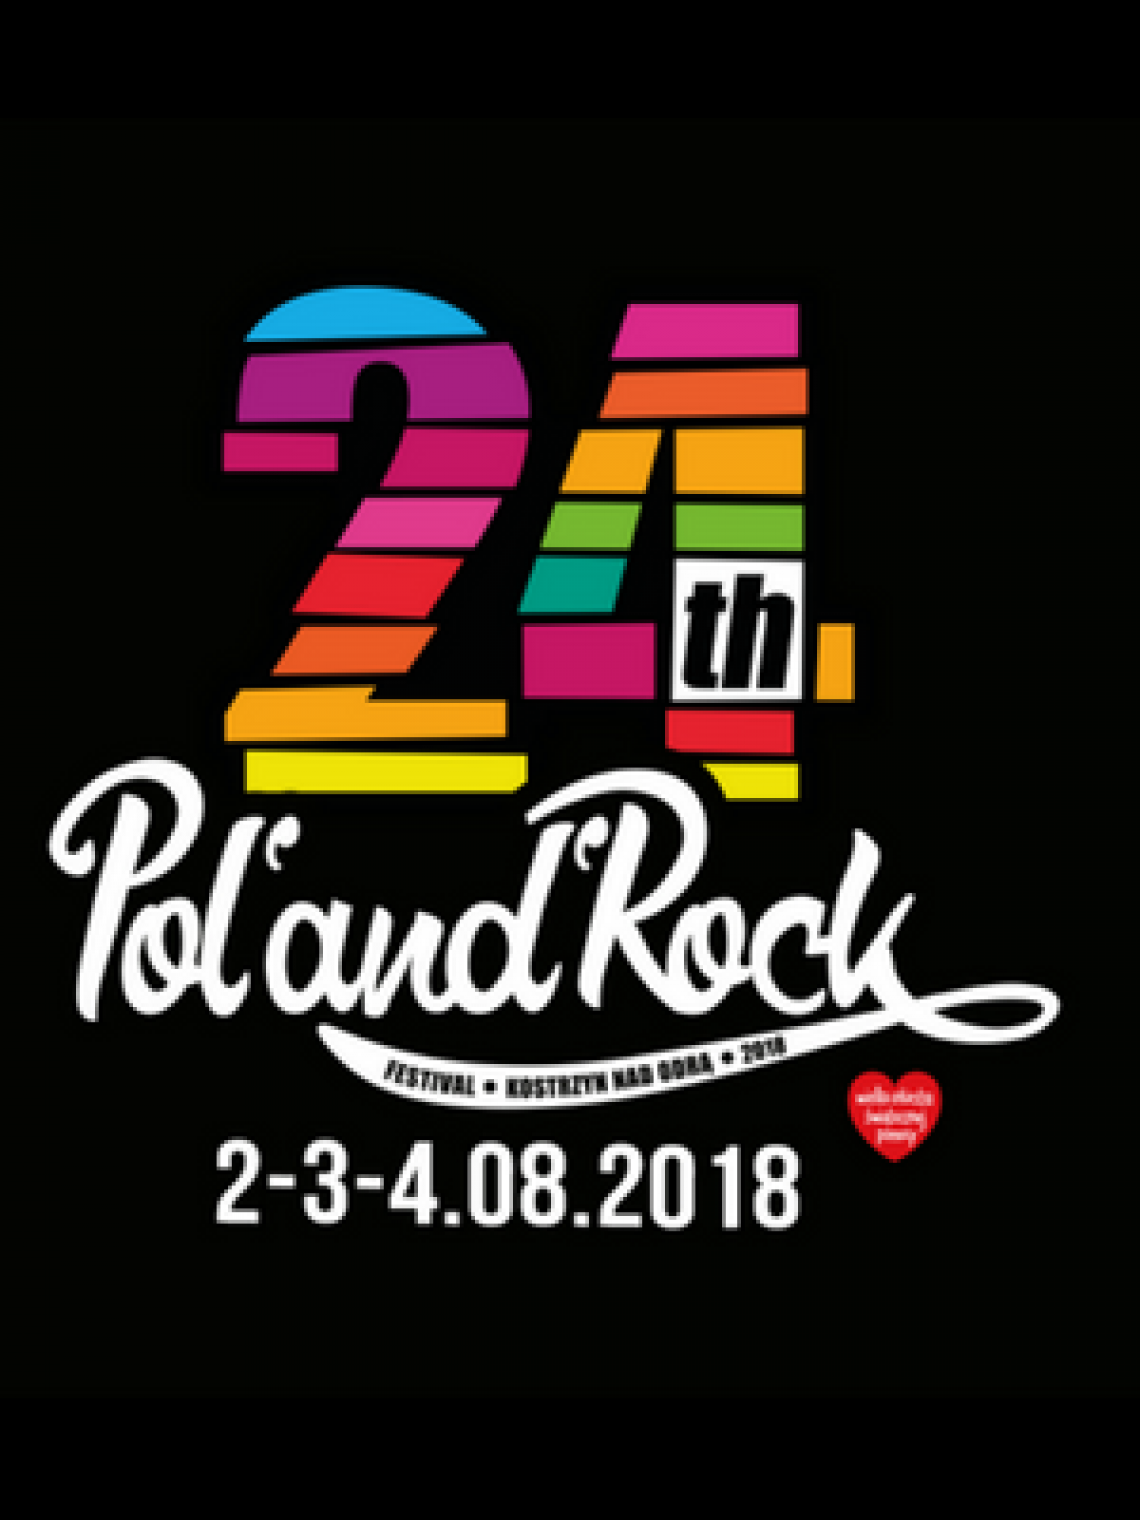 Pol'and'ROck Festival 2018, czyli legendarny Przystanek Woodstock